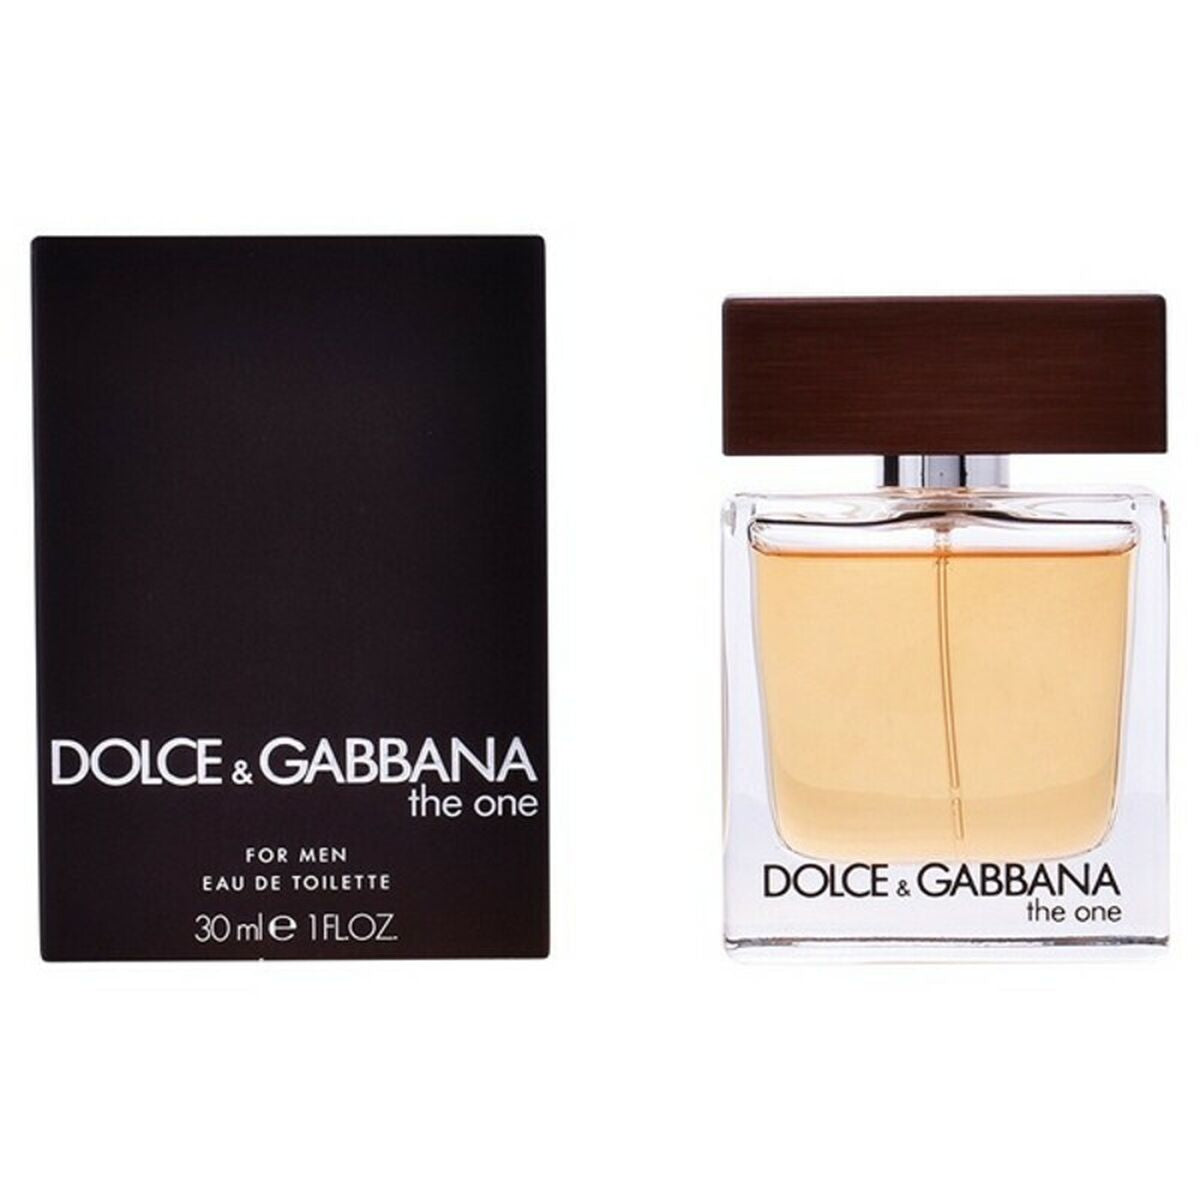 Άρωμα ανδρών Το One Dolce & Gabbana Edt